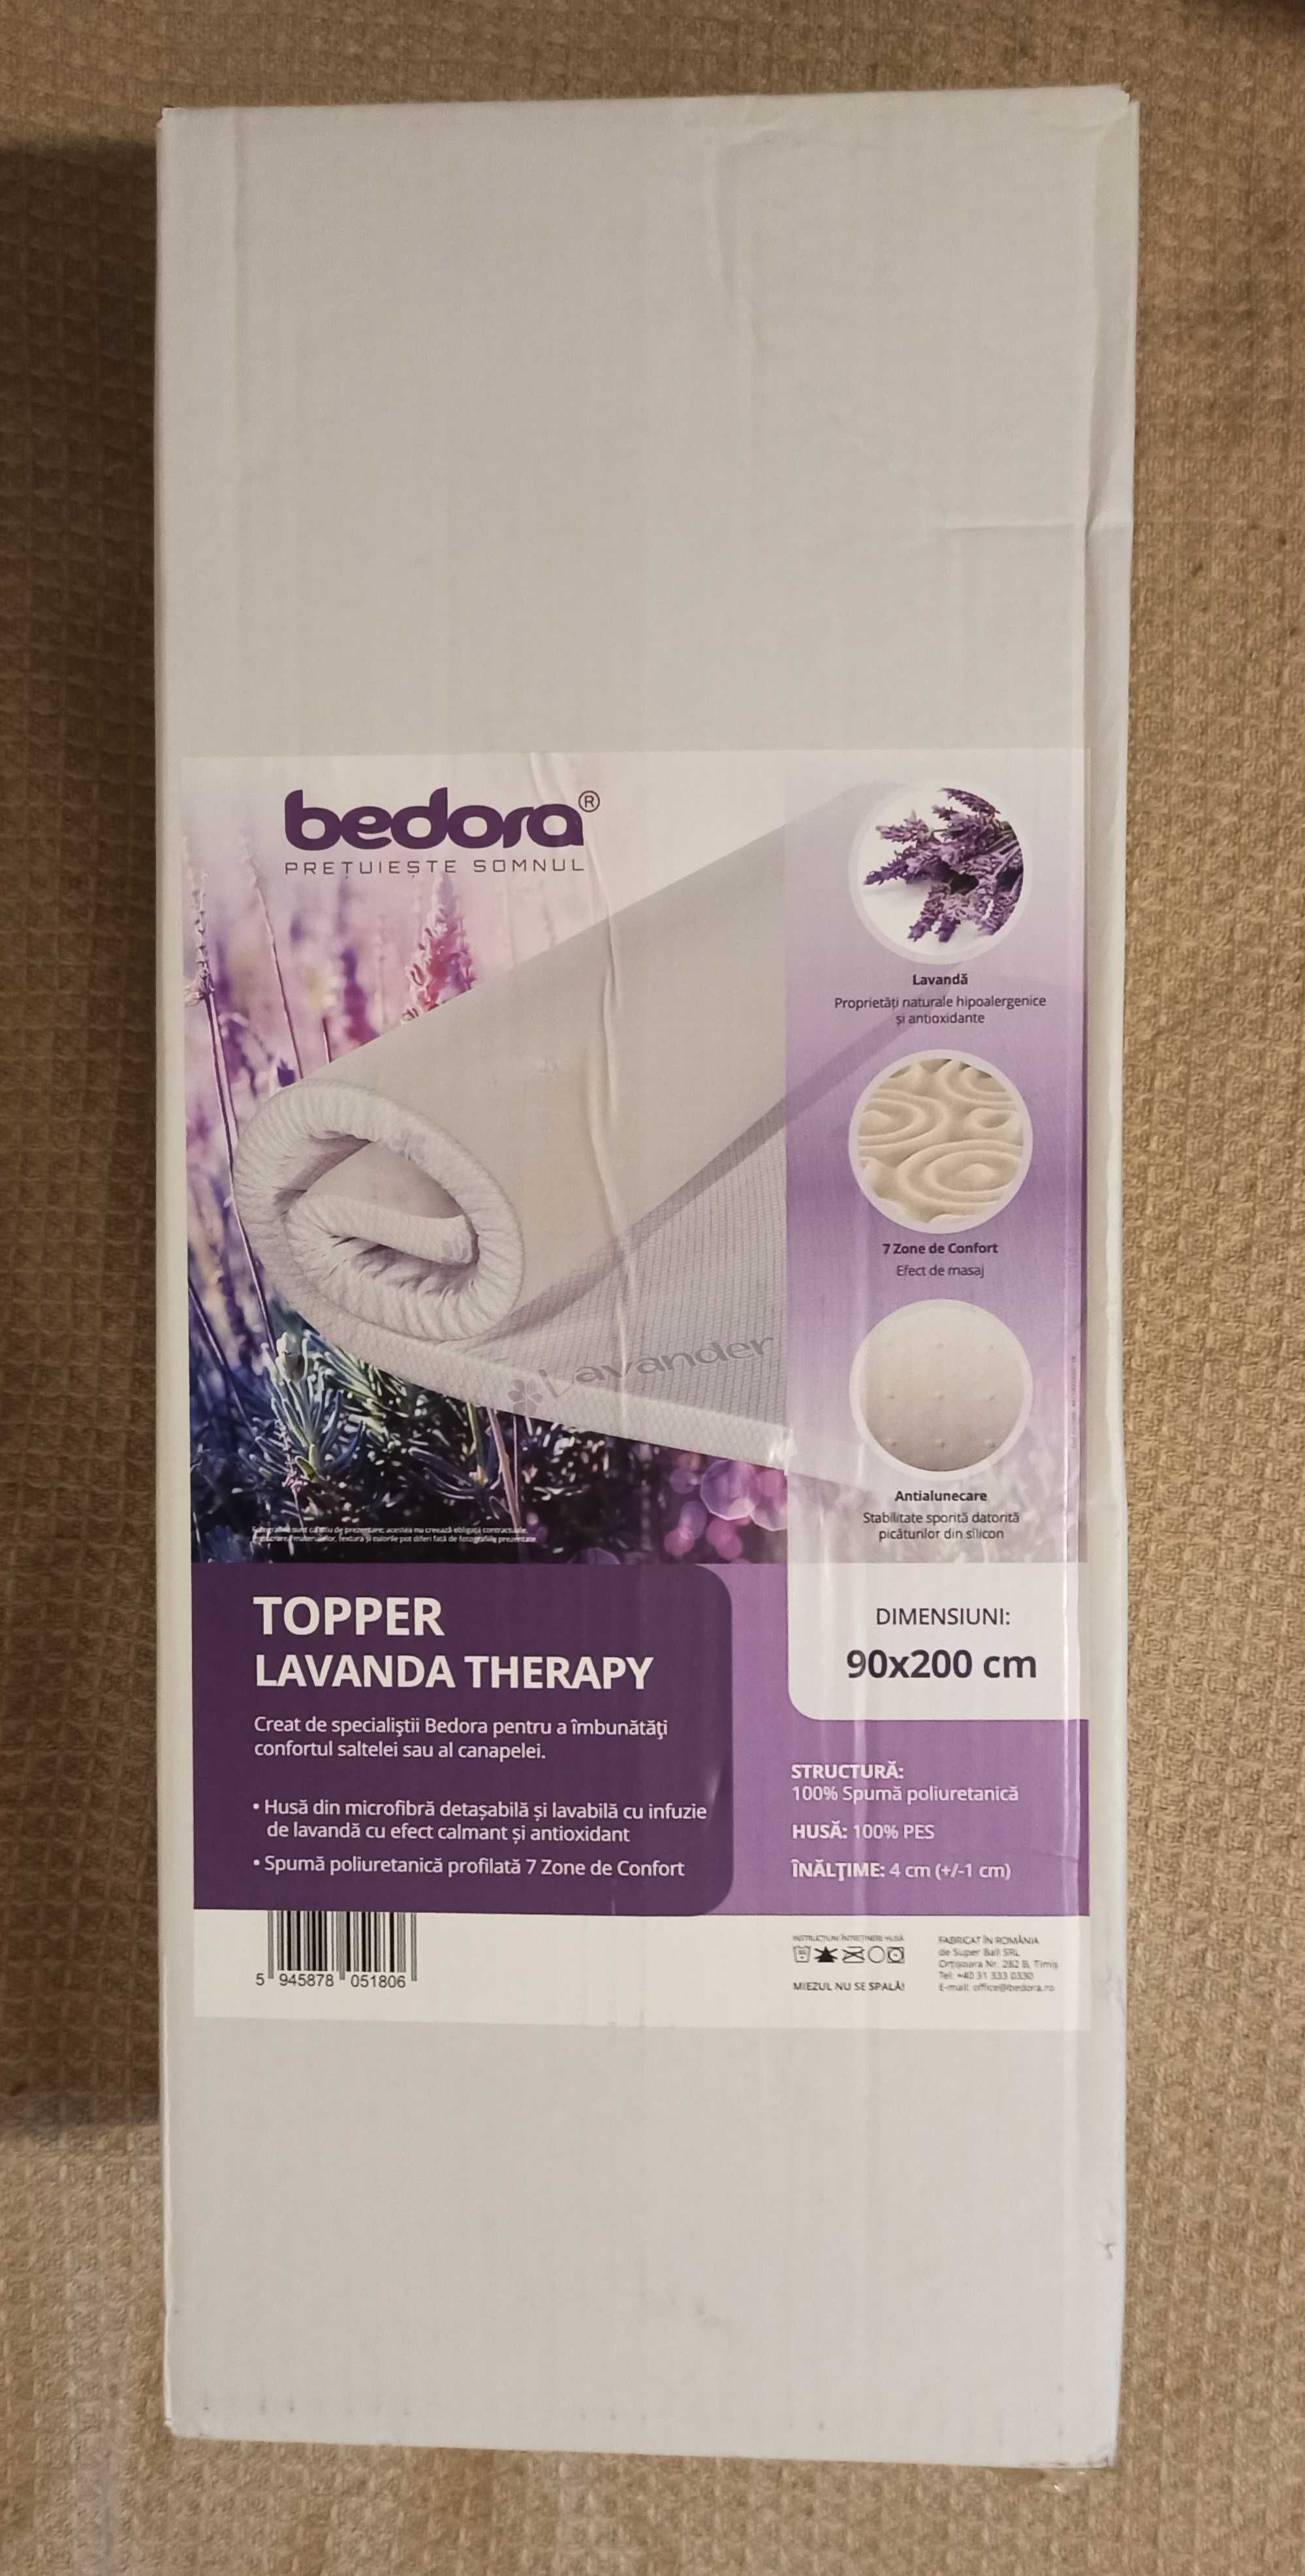 Topper Bedora Lavander Therapy. (NOU)